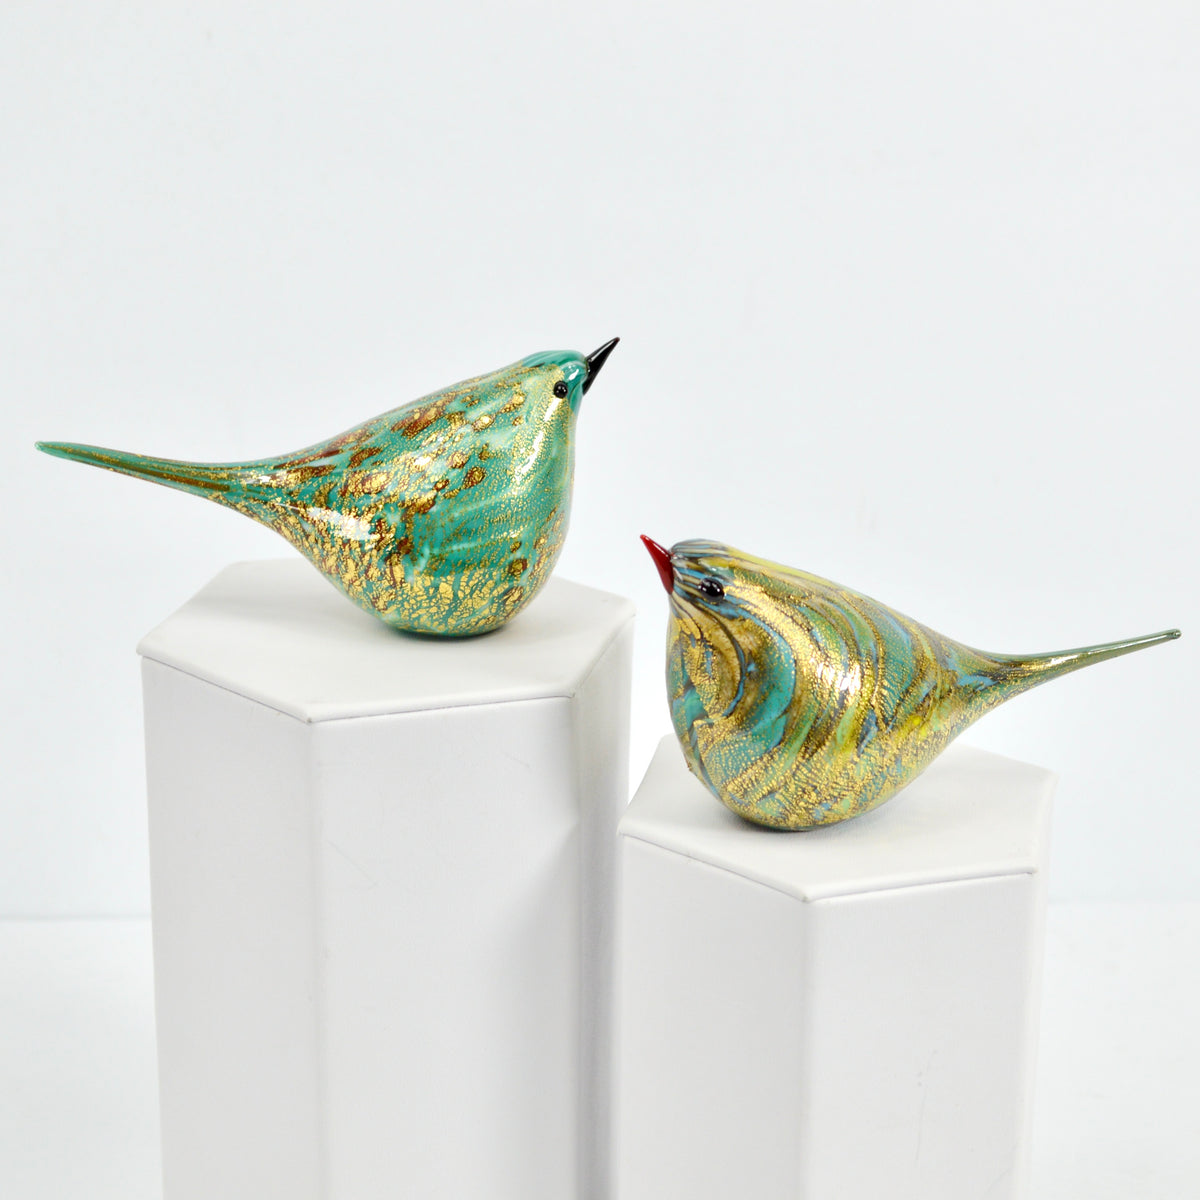 Murano Glass Catarina Chirpie Bird, Handblown Glass, Teal, Made in Italy